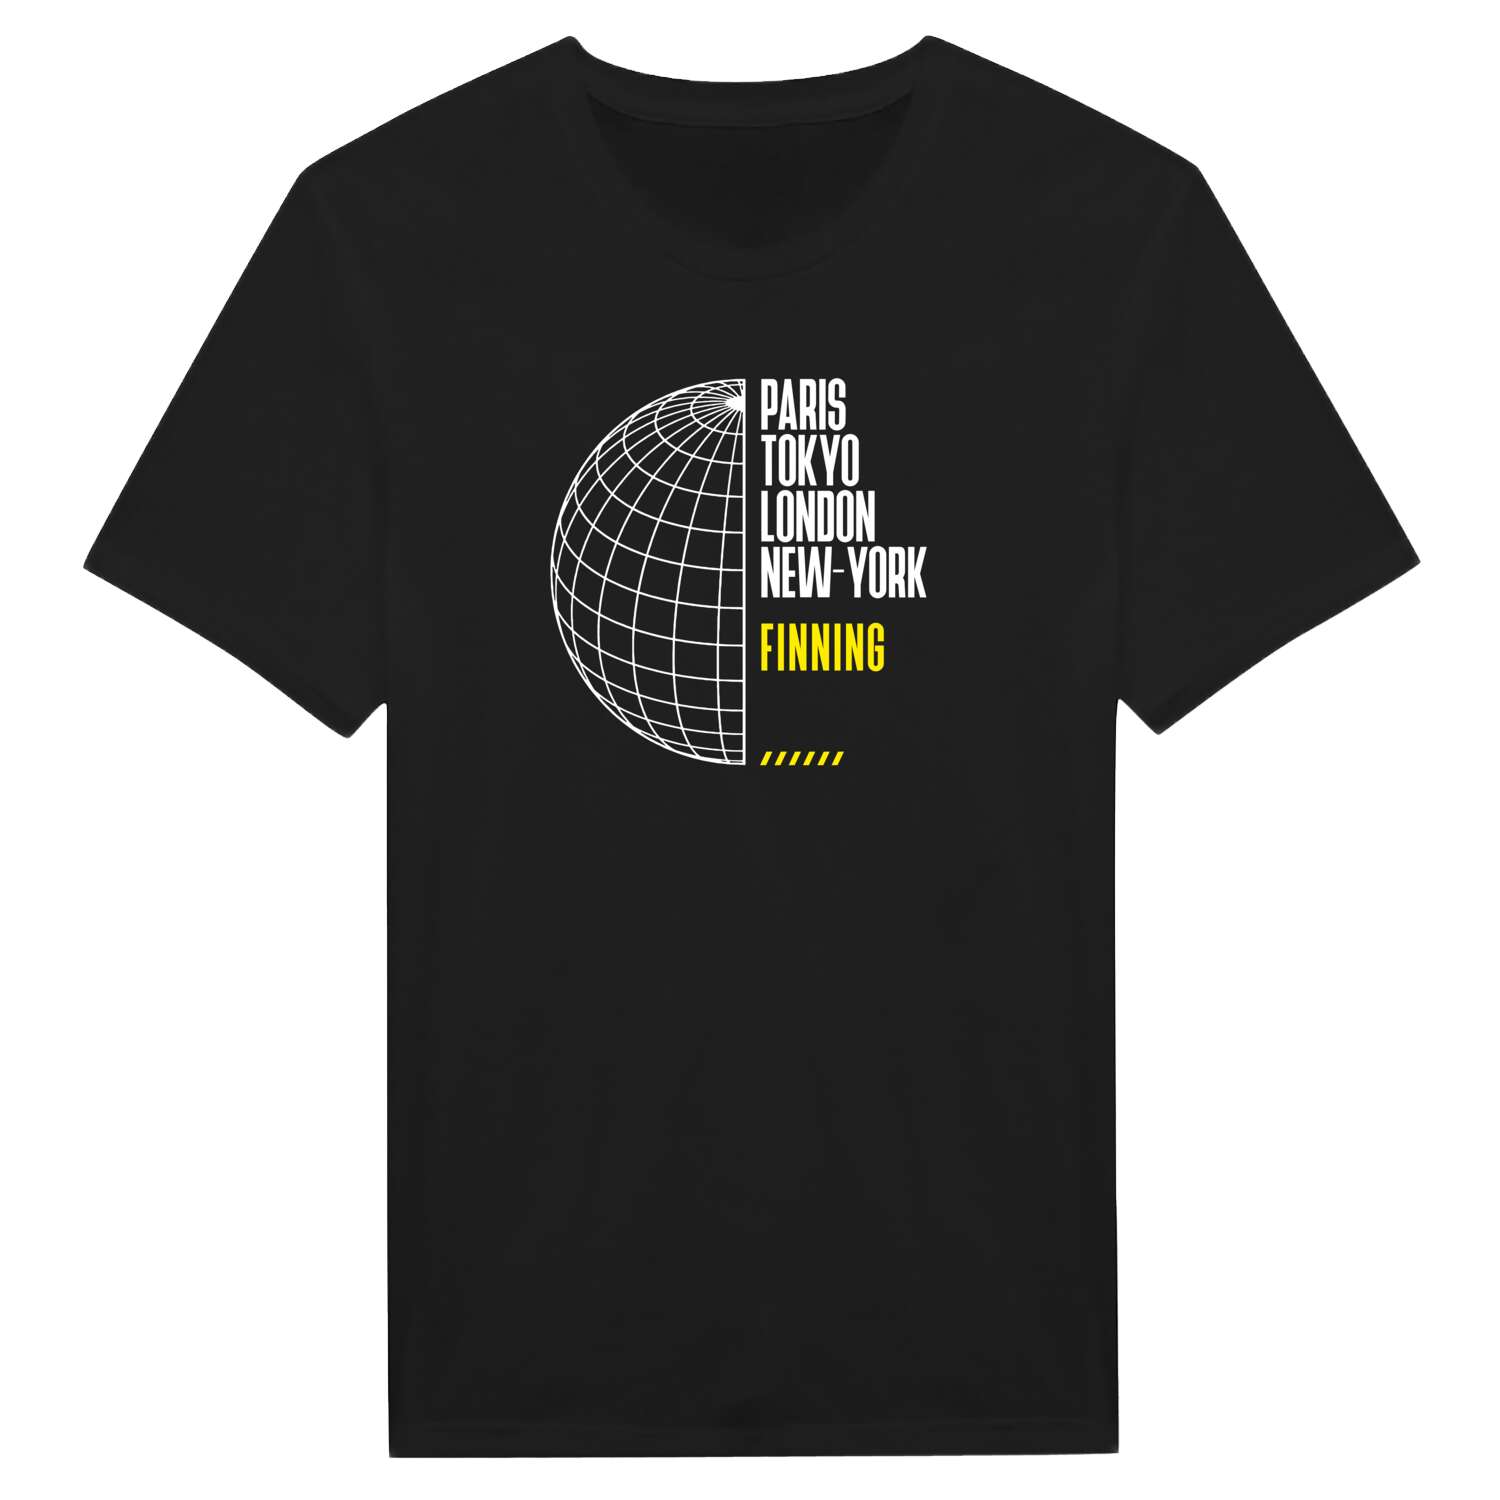 Finning T-Shirt »Paris Tokyo London«